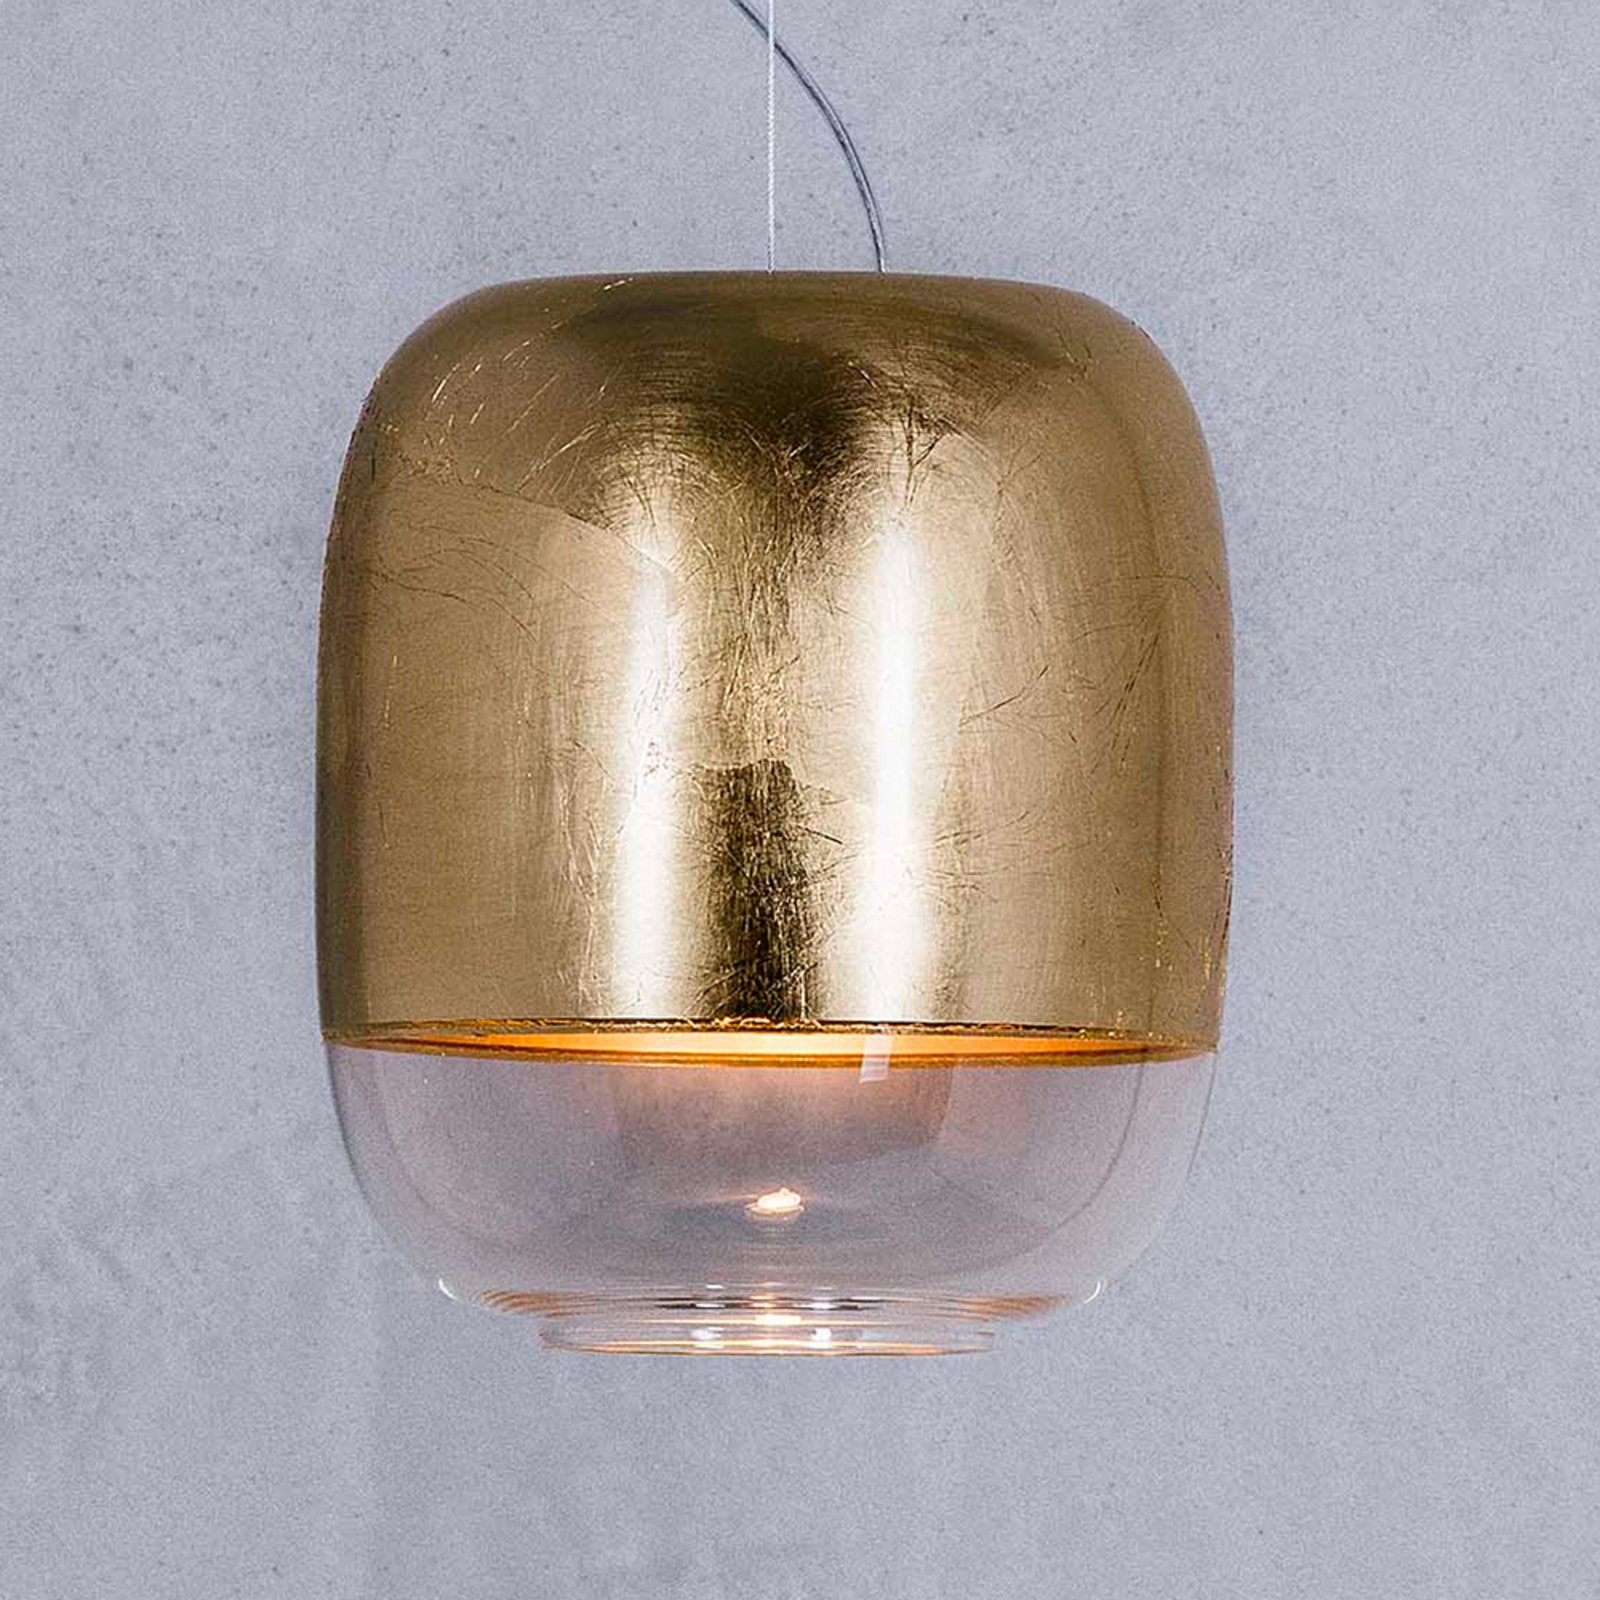 Prandina Gong S1 hanglamp goud